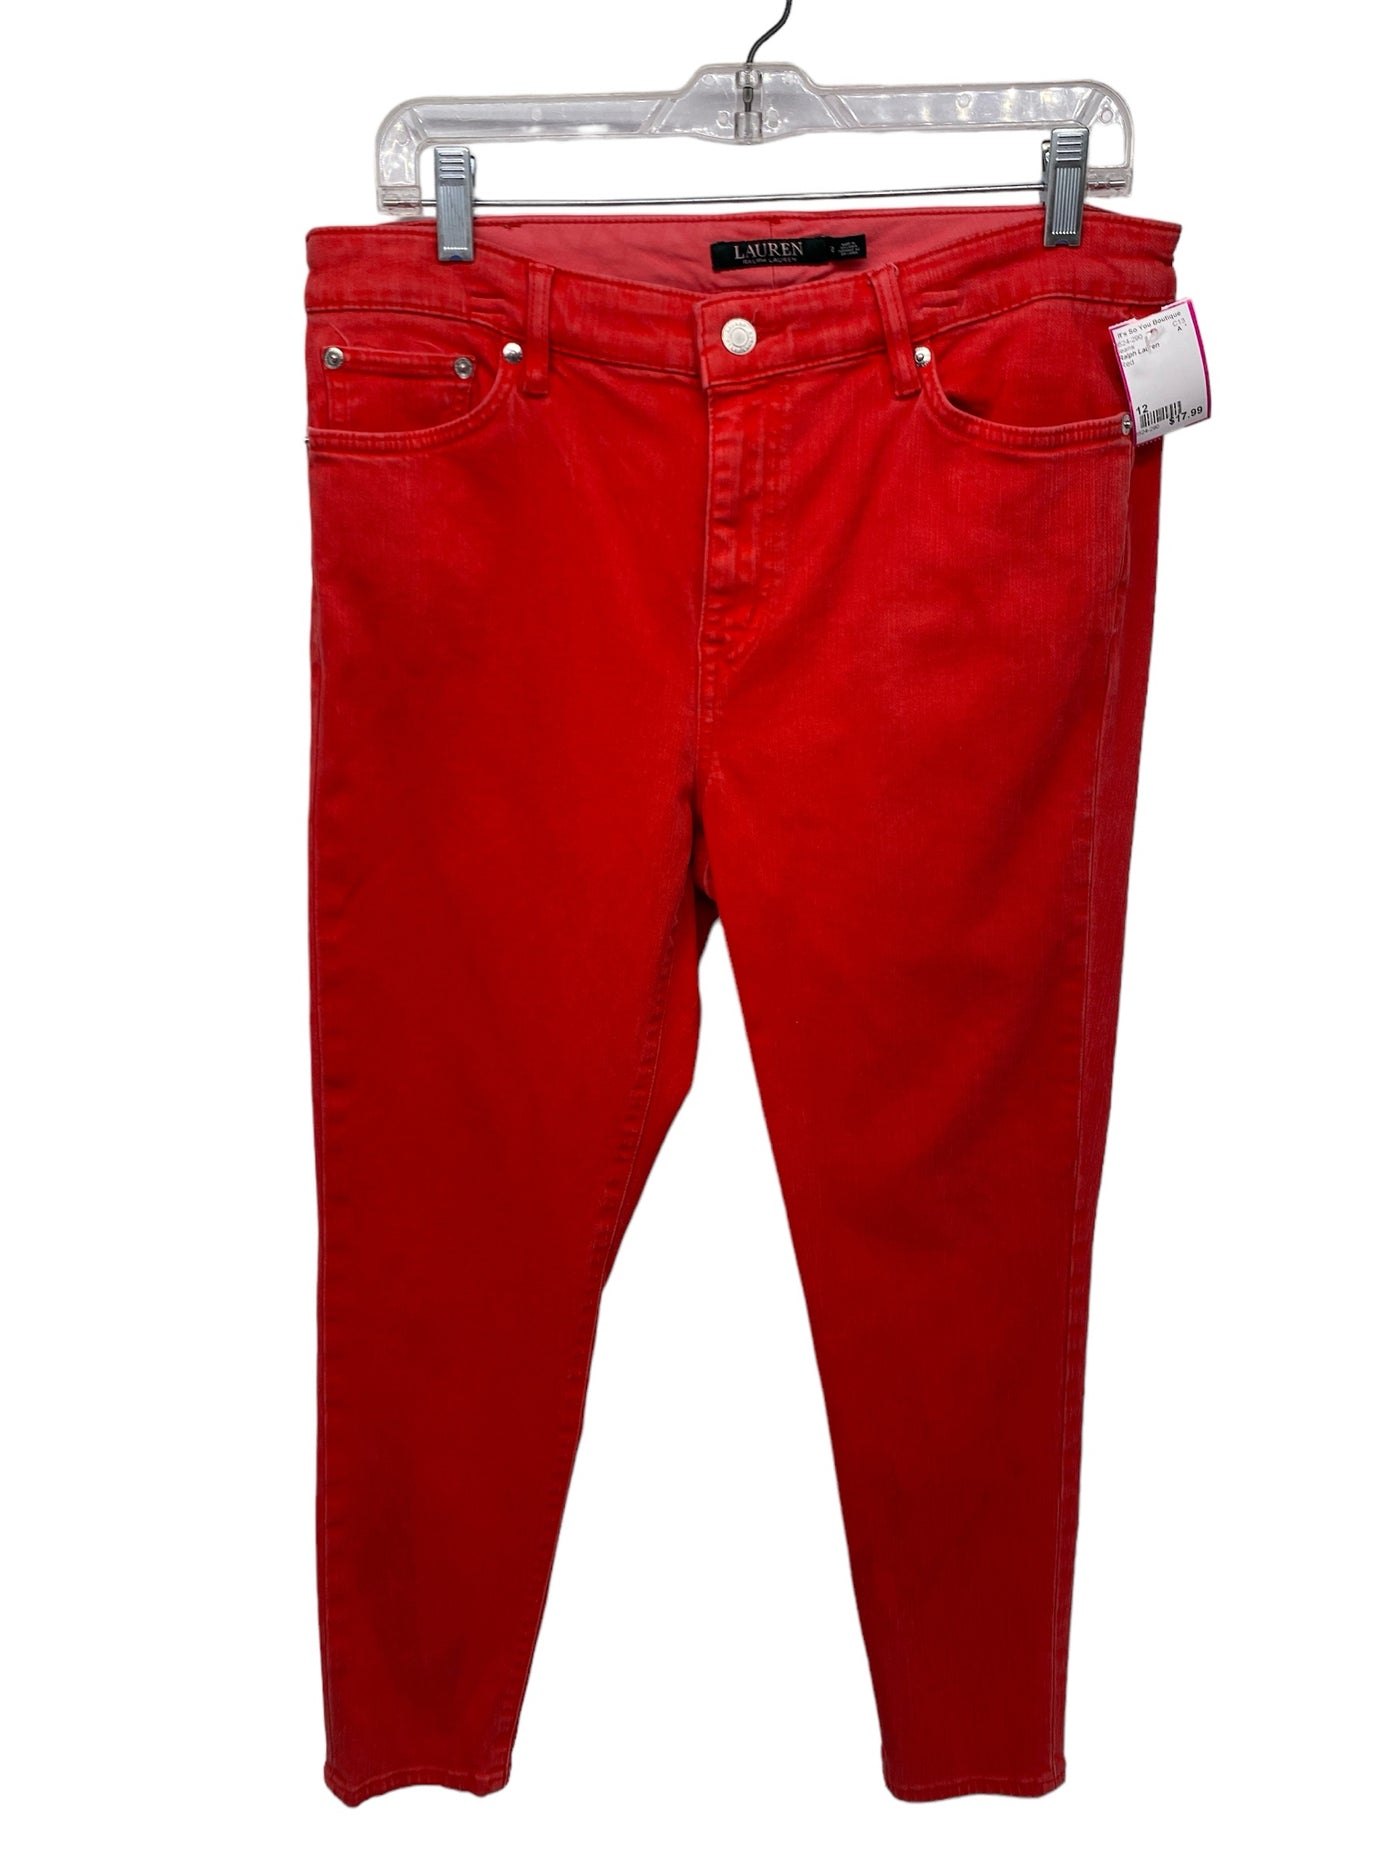 Ralph Lauren Misses Size 12 Red Jeans